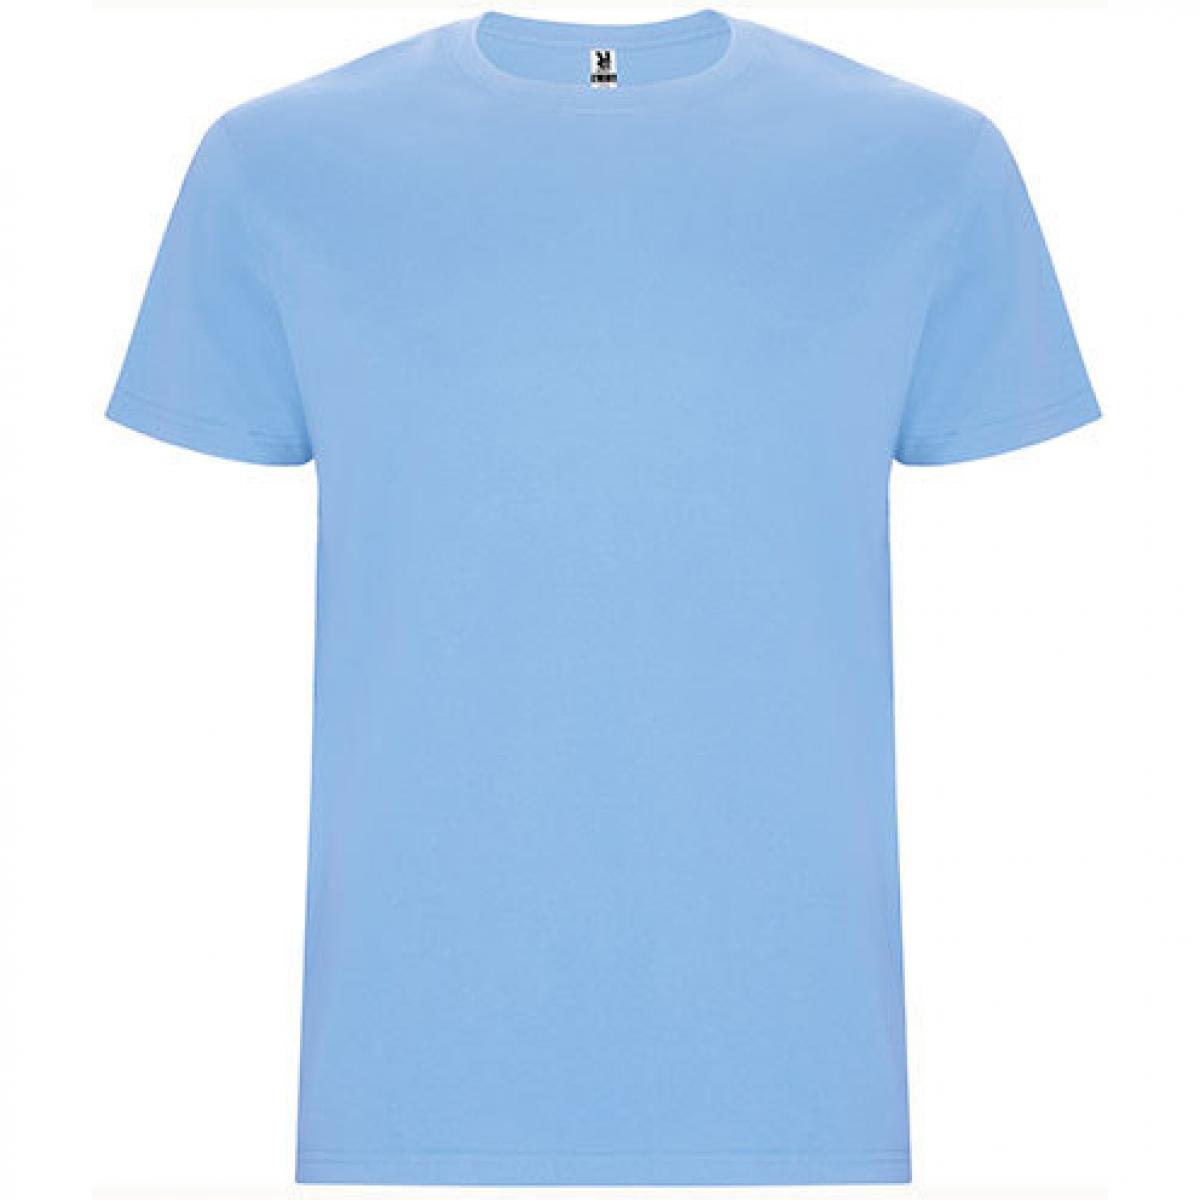 Hersteller: Roly Herstellernummer: CA6681 Artikelbezeichnung: Stafford T-Shirt - Doppellagiger Rundhalskragen Farbe: Sky Blue 10